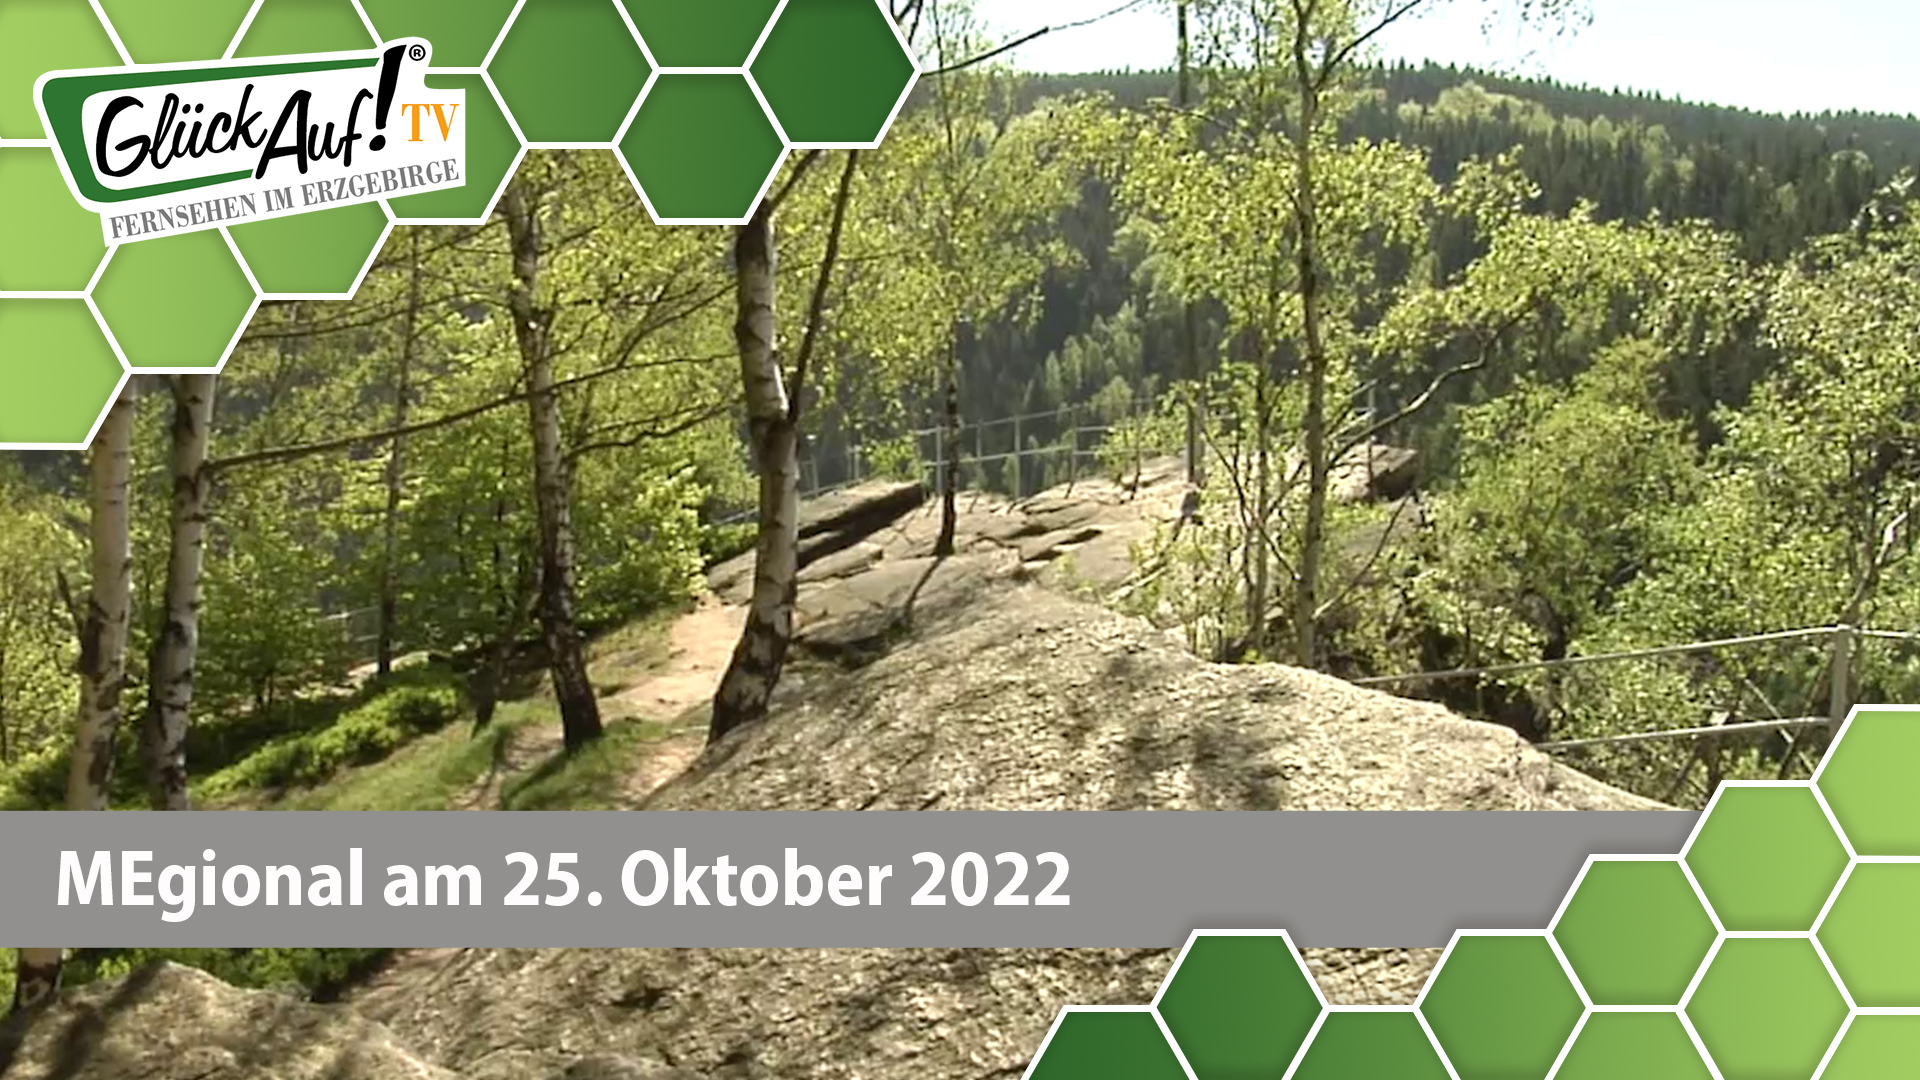 MEgional am 25. Oktober 2022 - mit einem TourTipp am Katzenstein